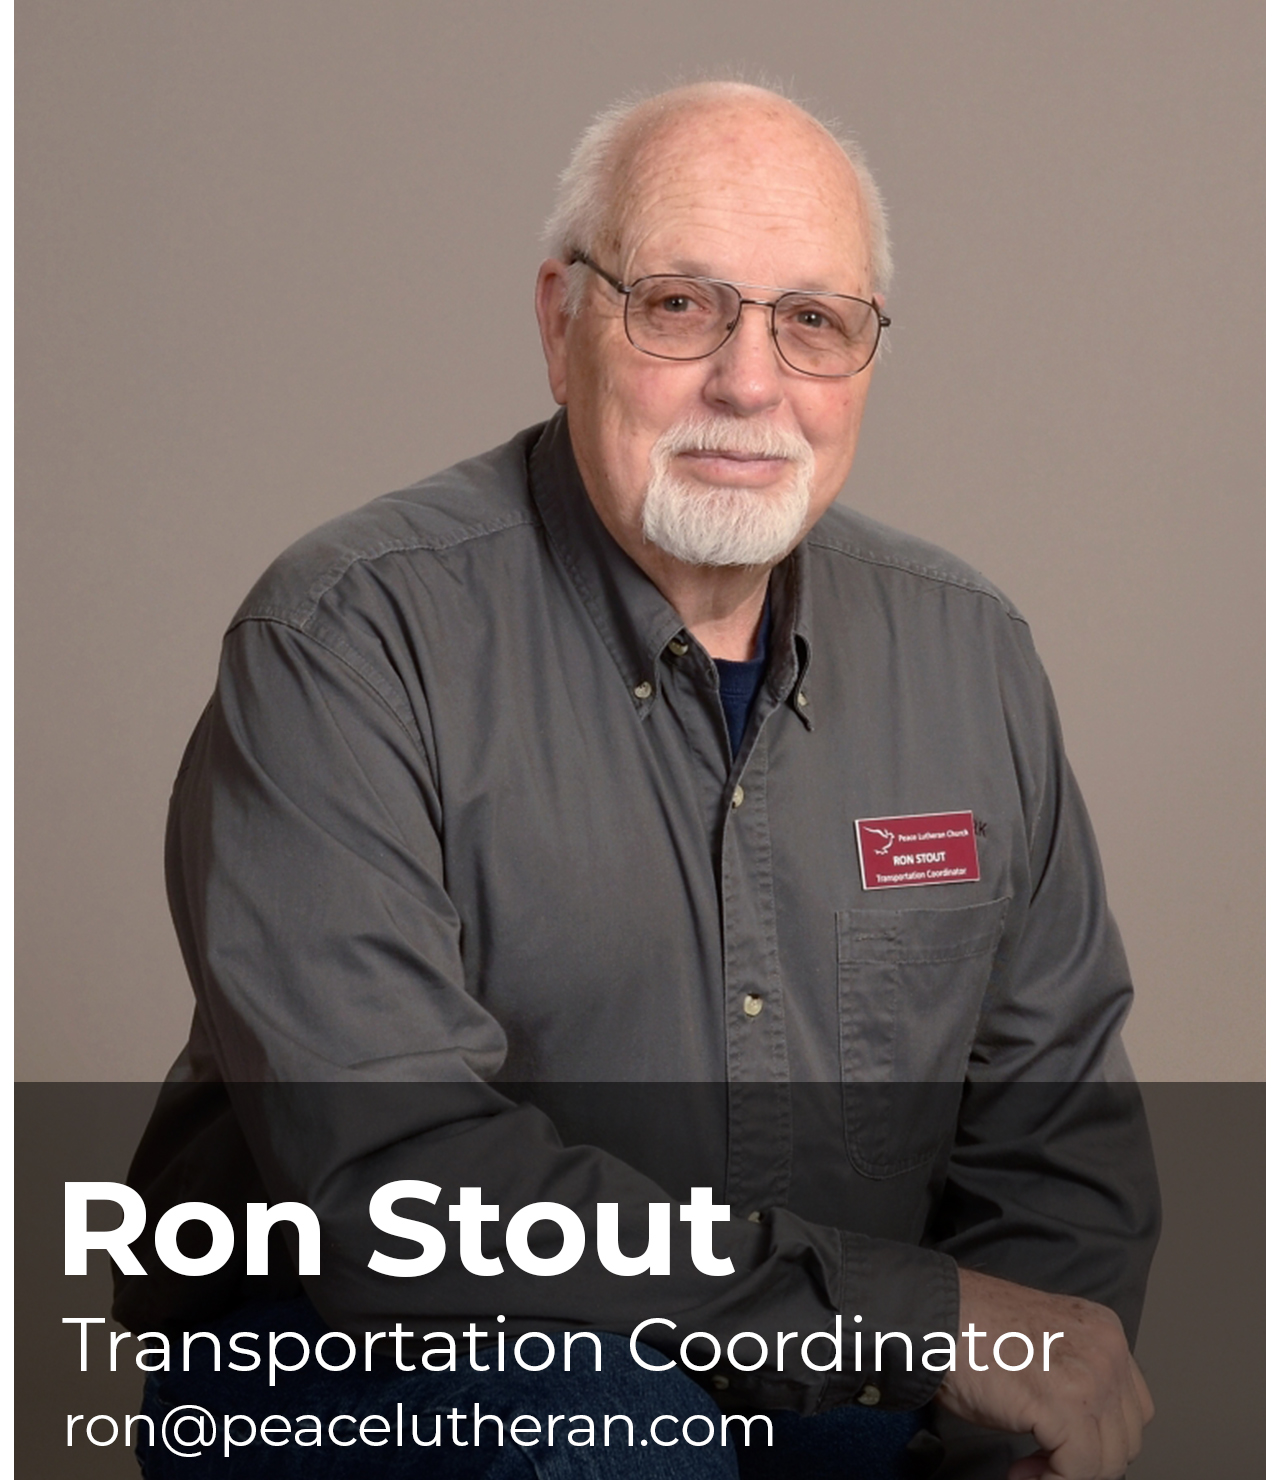 Ron Stout